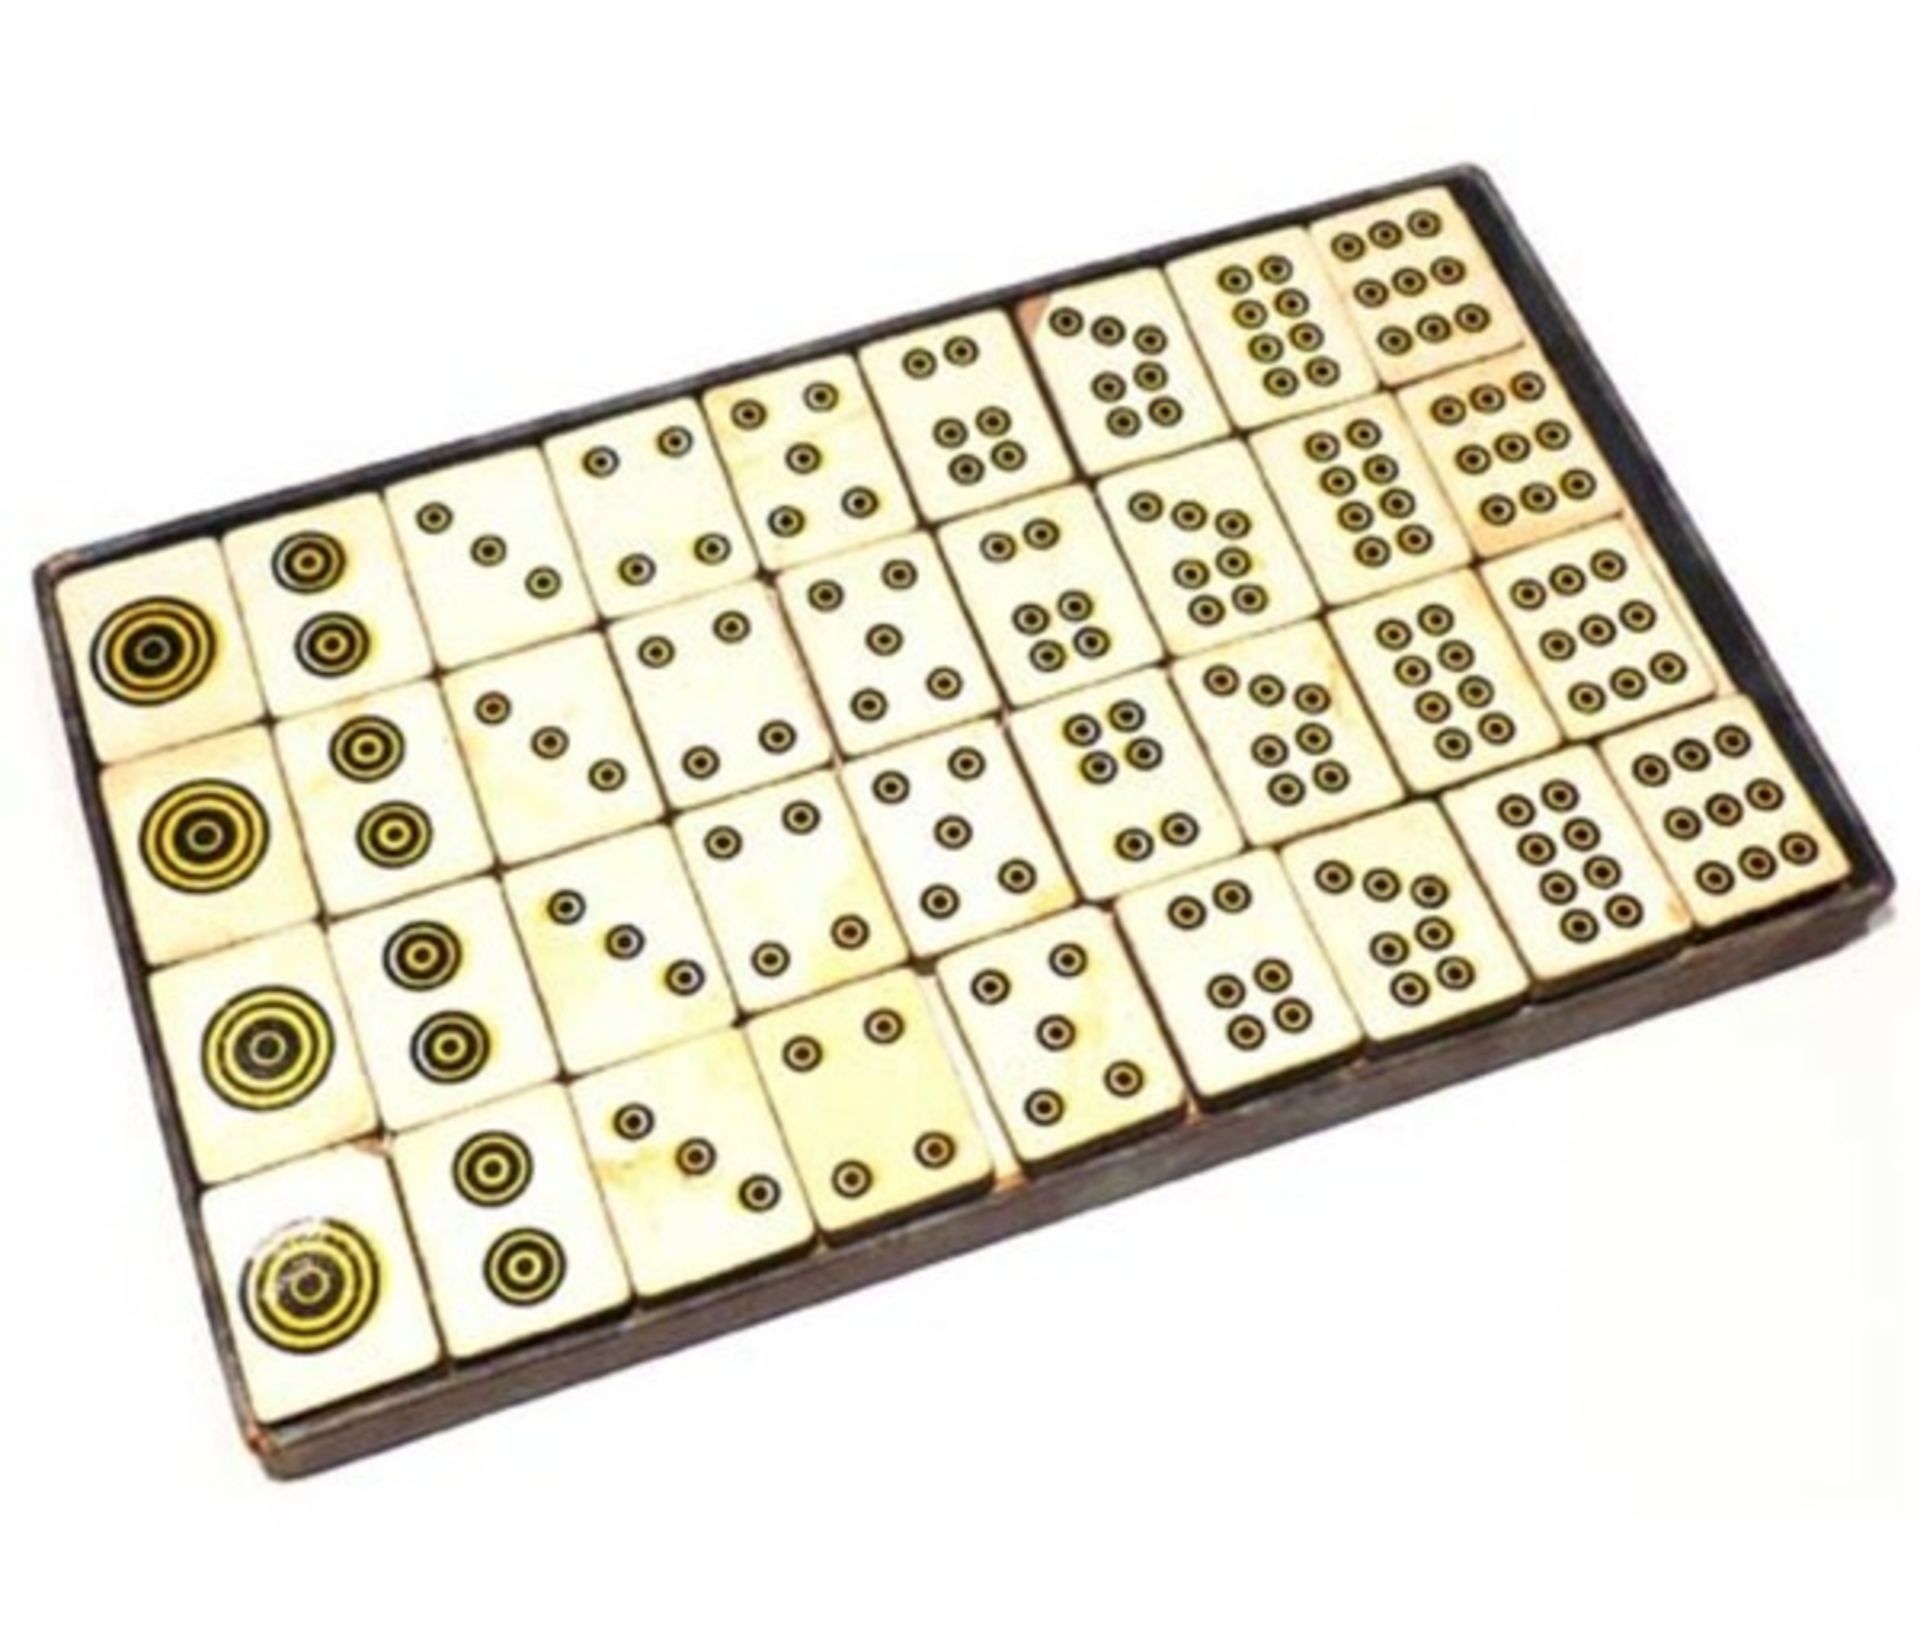 (Mahjong) Mahjong Europees, De Sala Spelen met het Rode zegel, ca. 1930 - Bild 12 aus 16